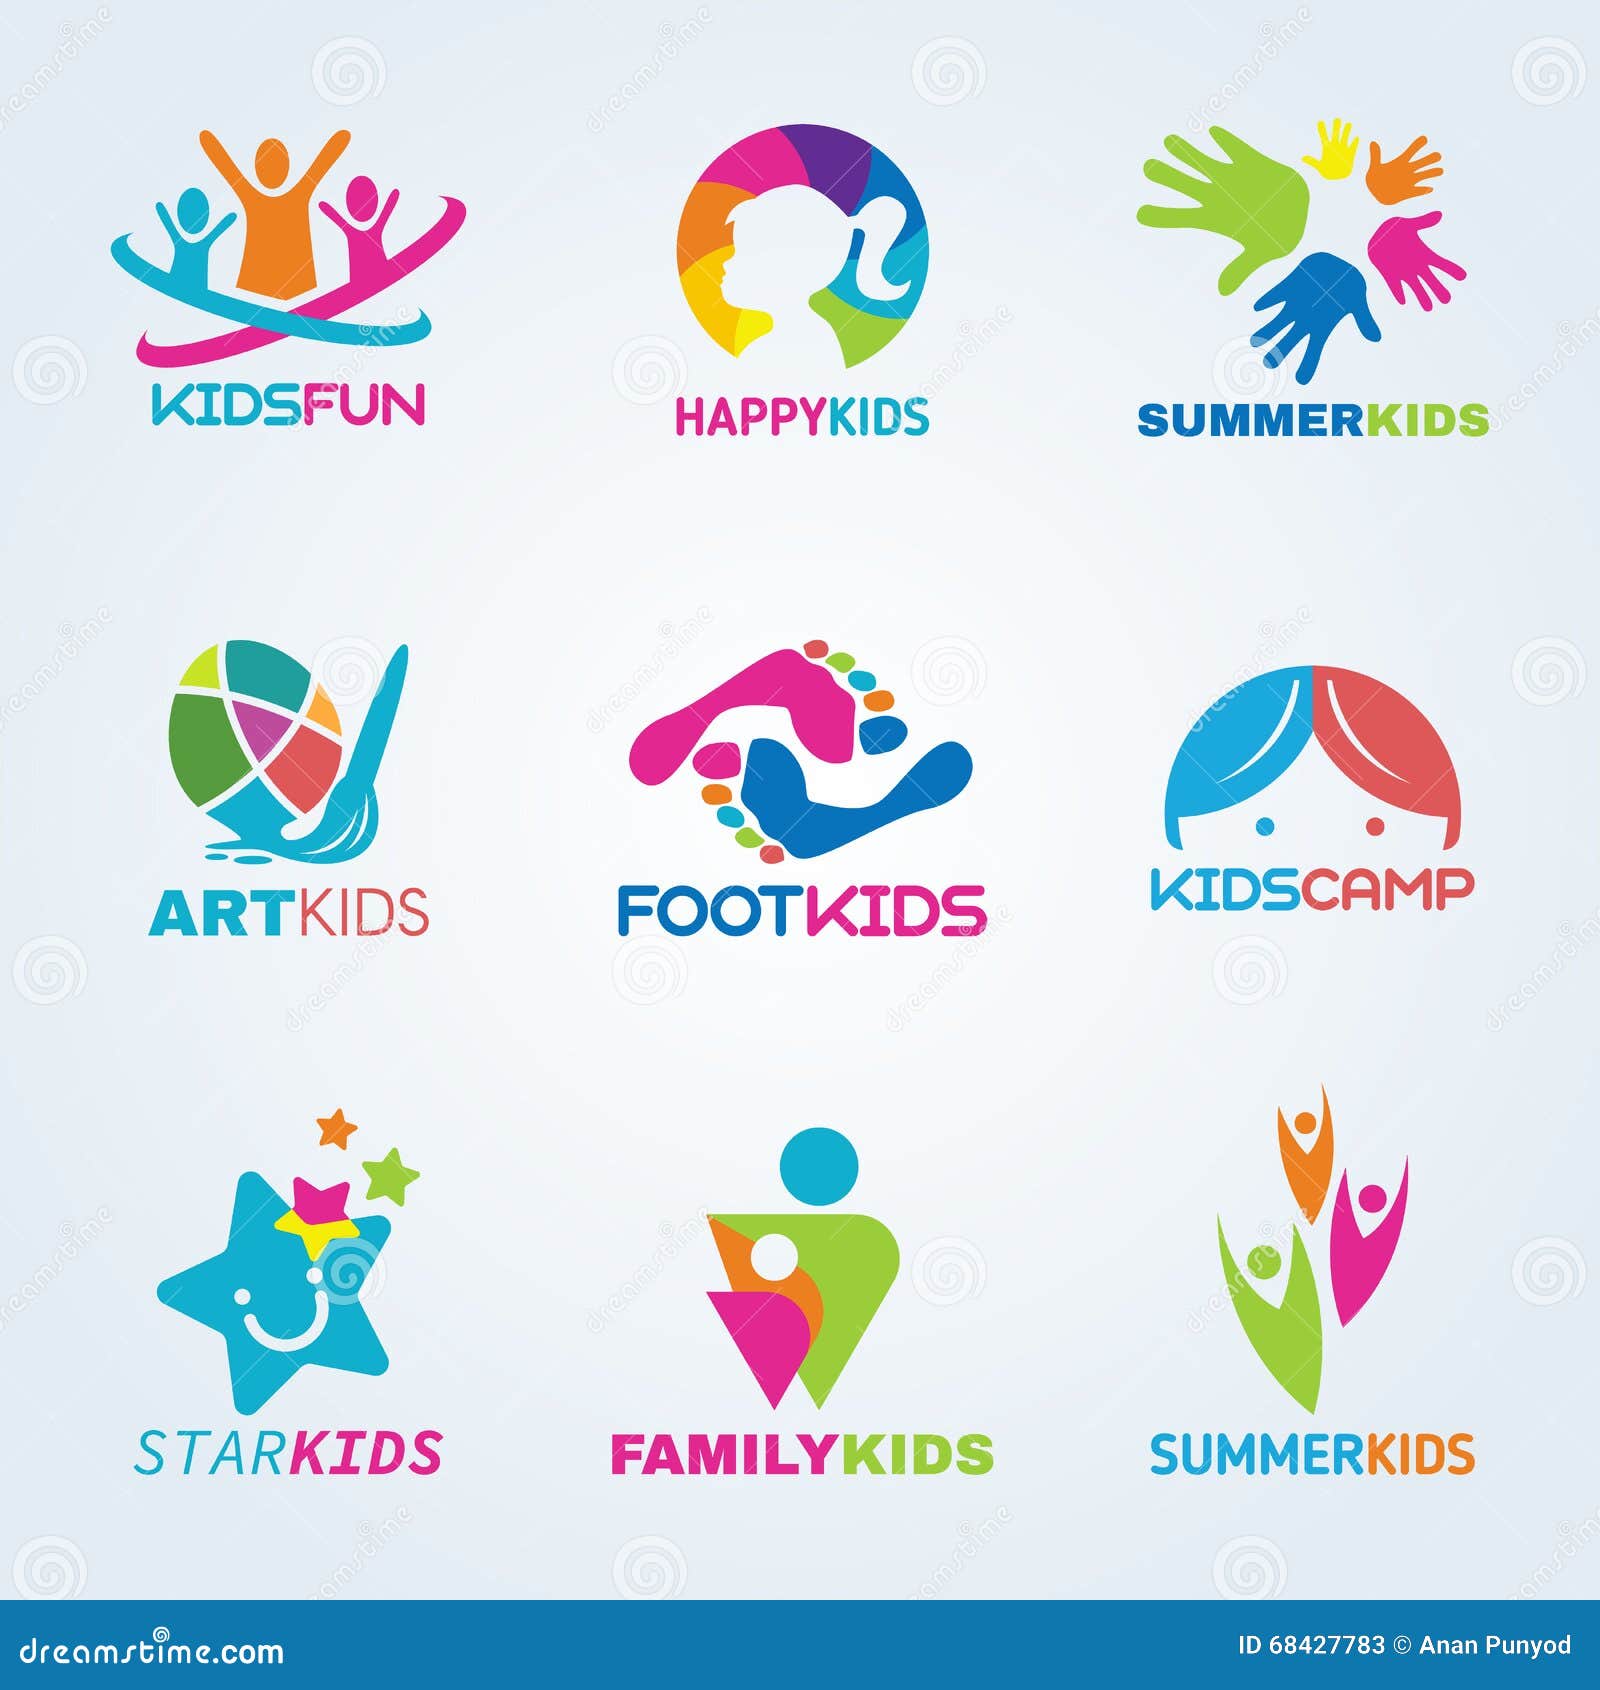 Kids Animation Logos